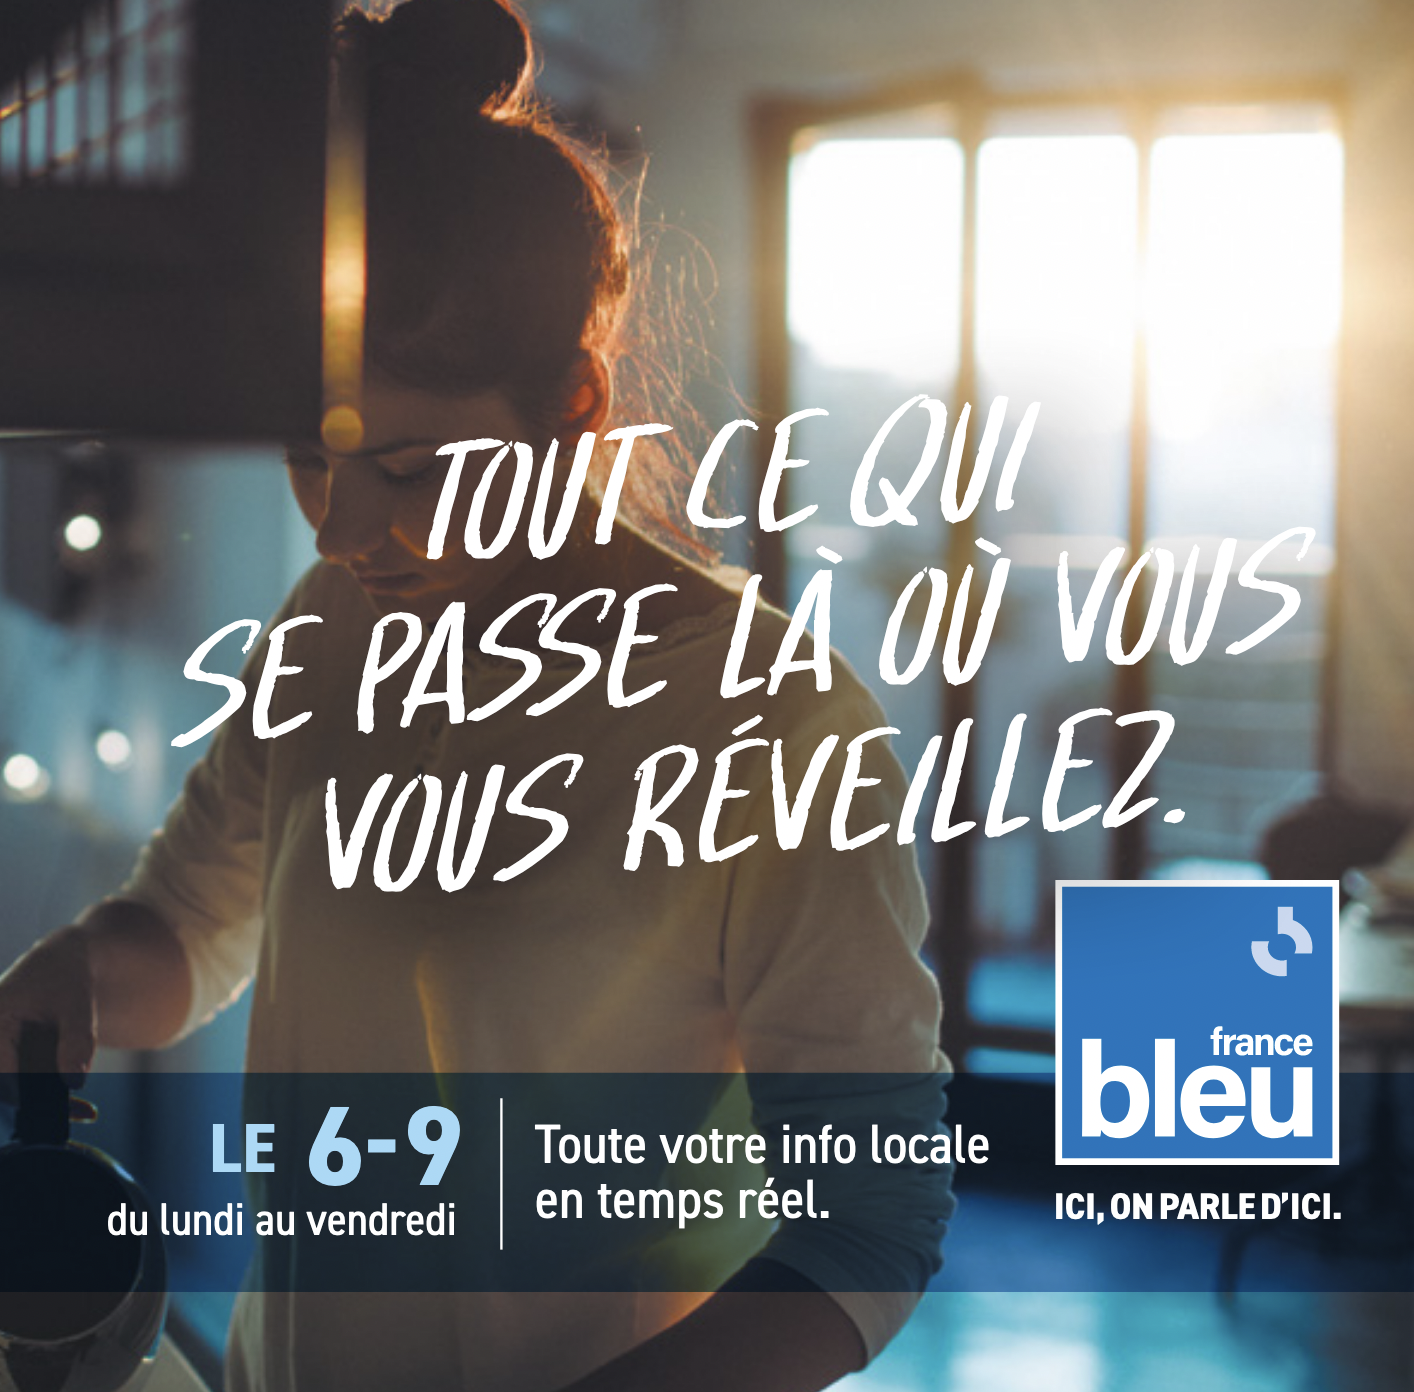 France Bleu veut être présente sur tous les fronts